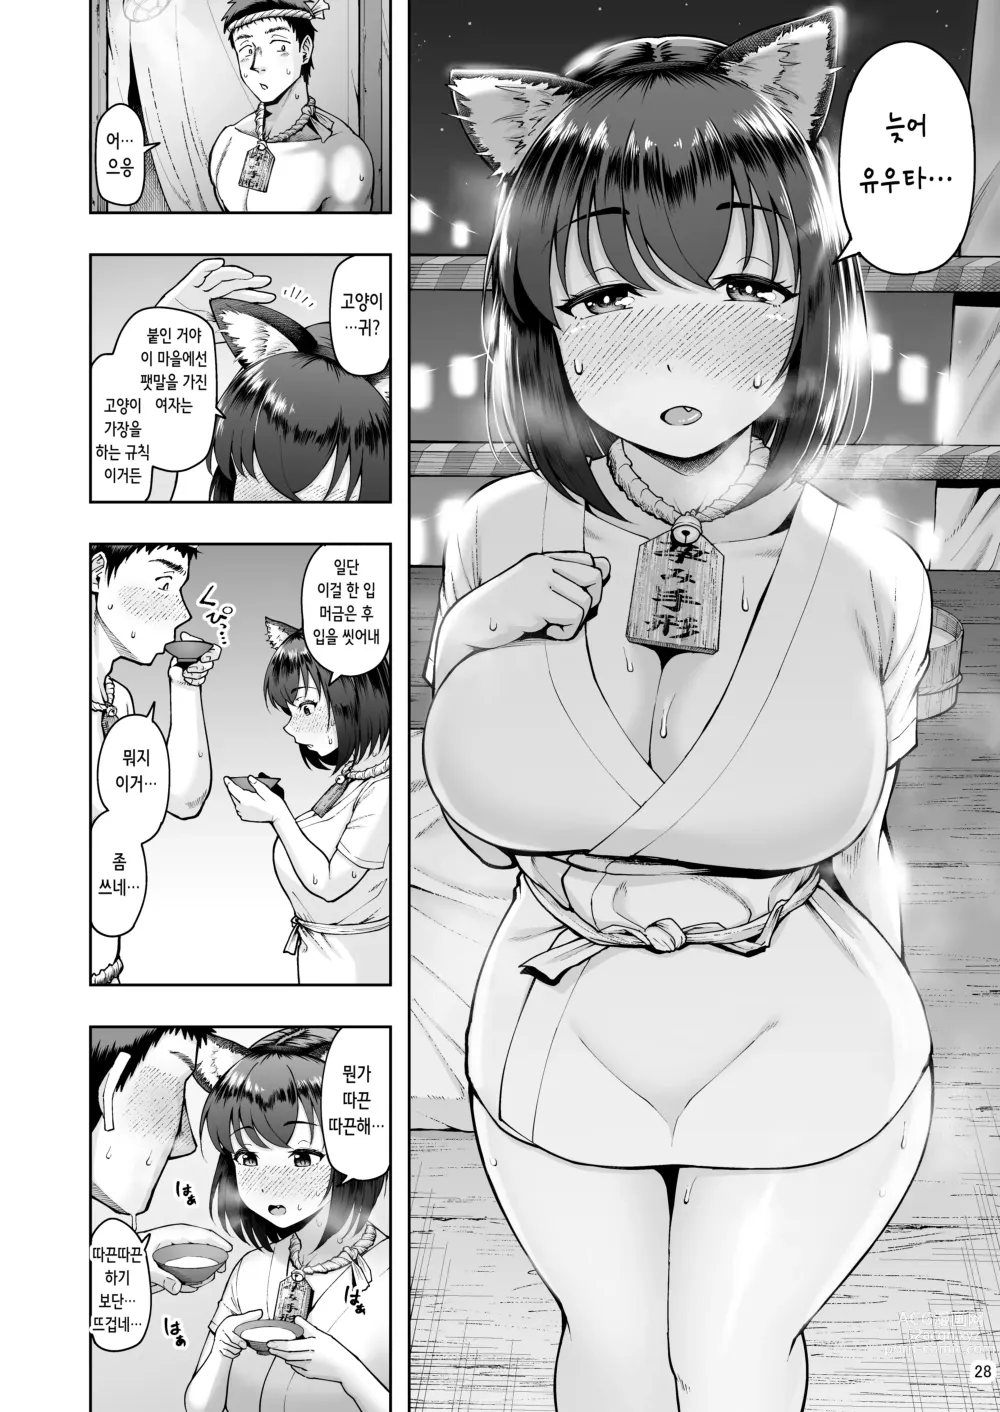 Page 28 of doujinshi 임신팻말 과소지역에서 츤츤거리는 그녀와 고양이 쓰다듬기 교미 생활